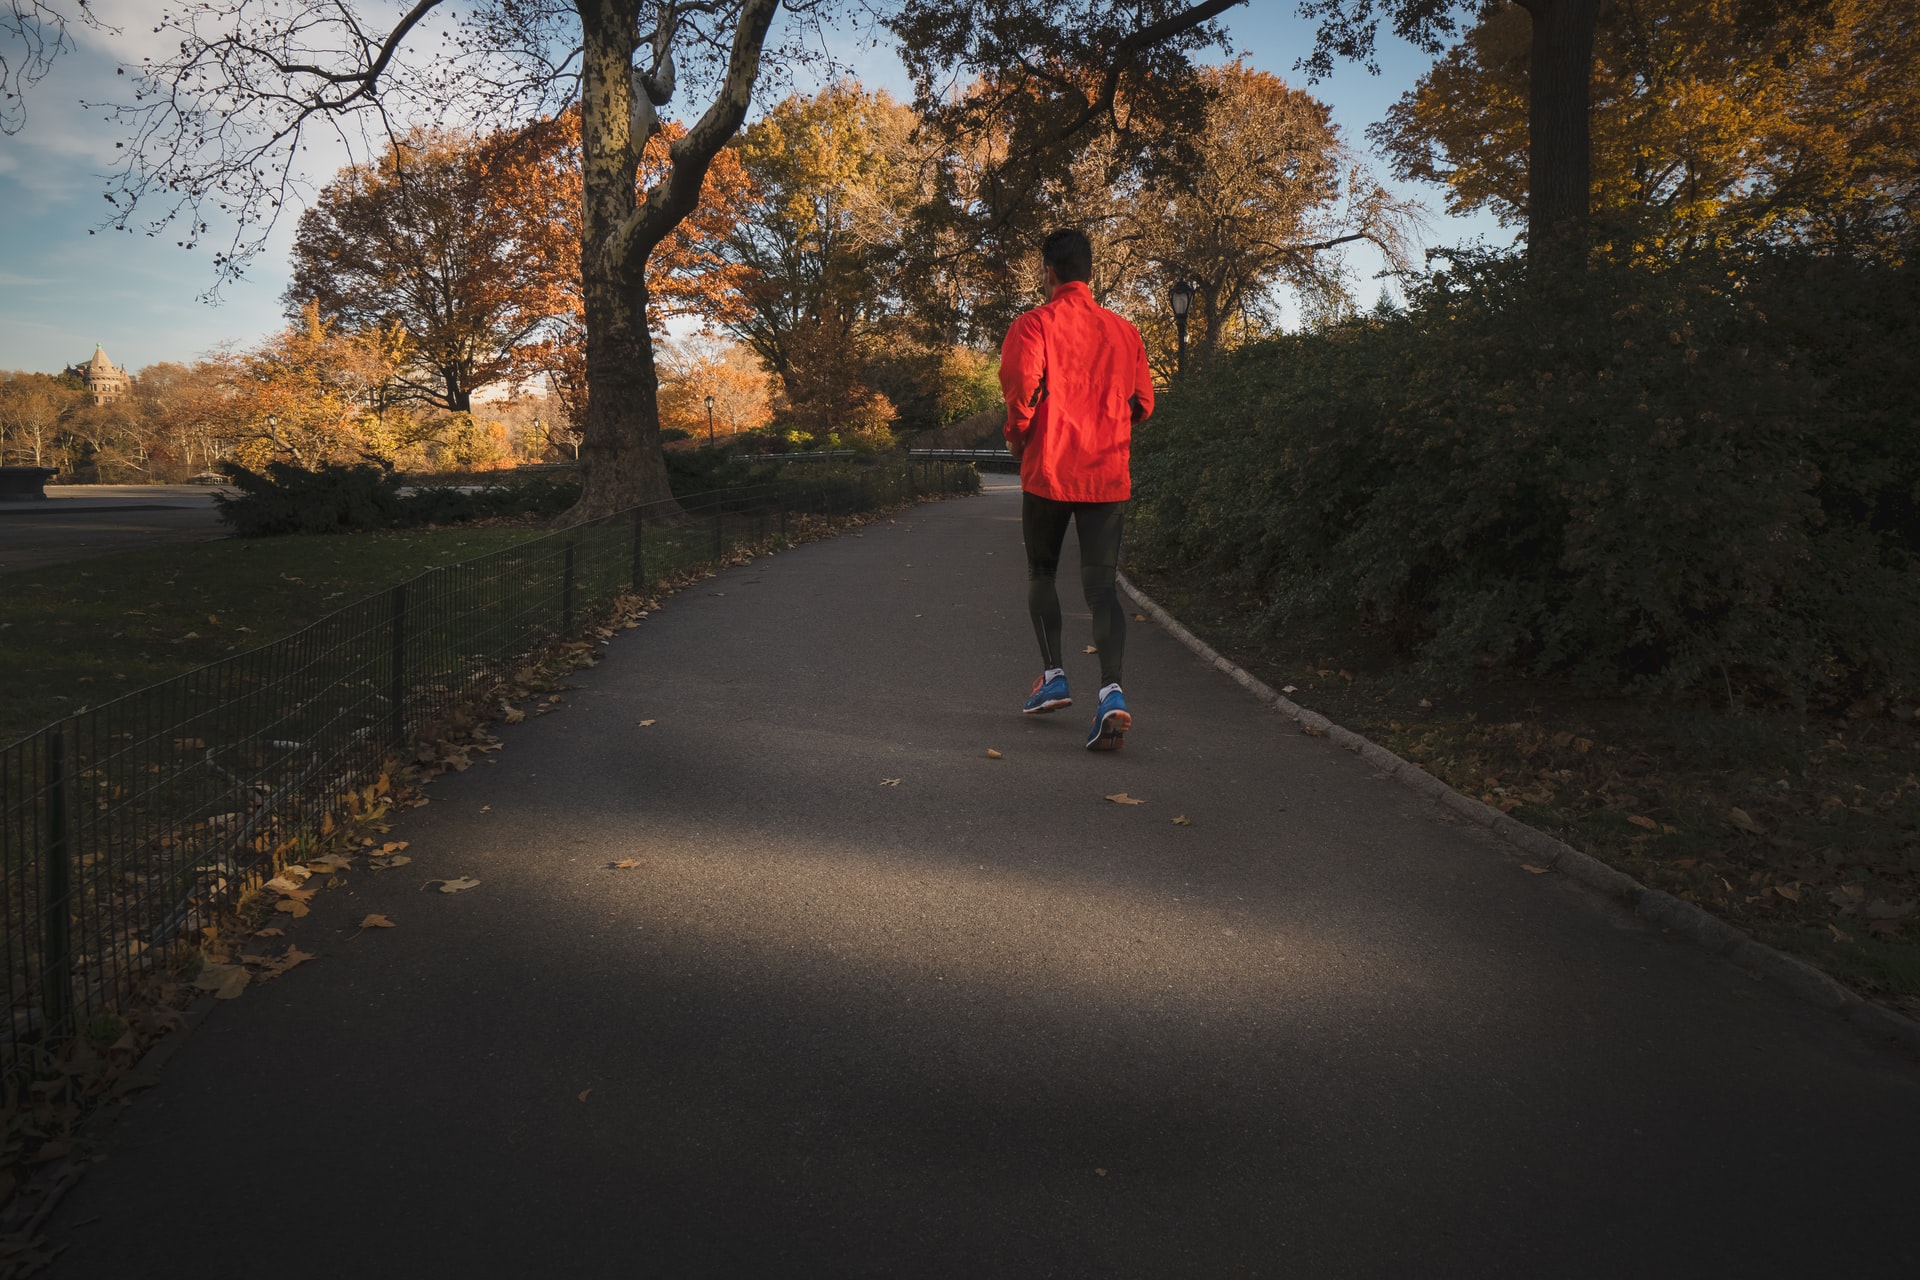 Man in orange jogging in an empty road